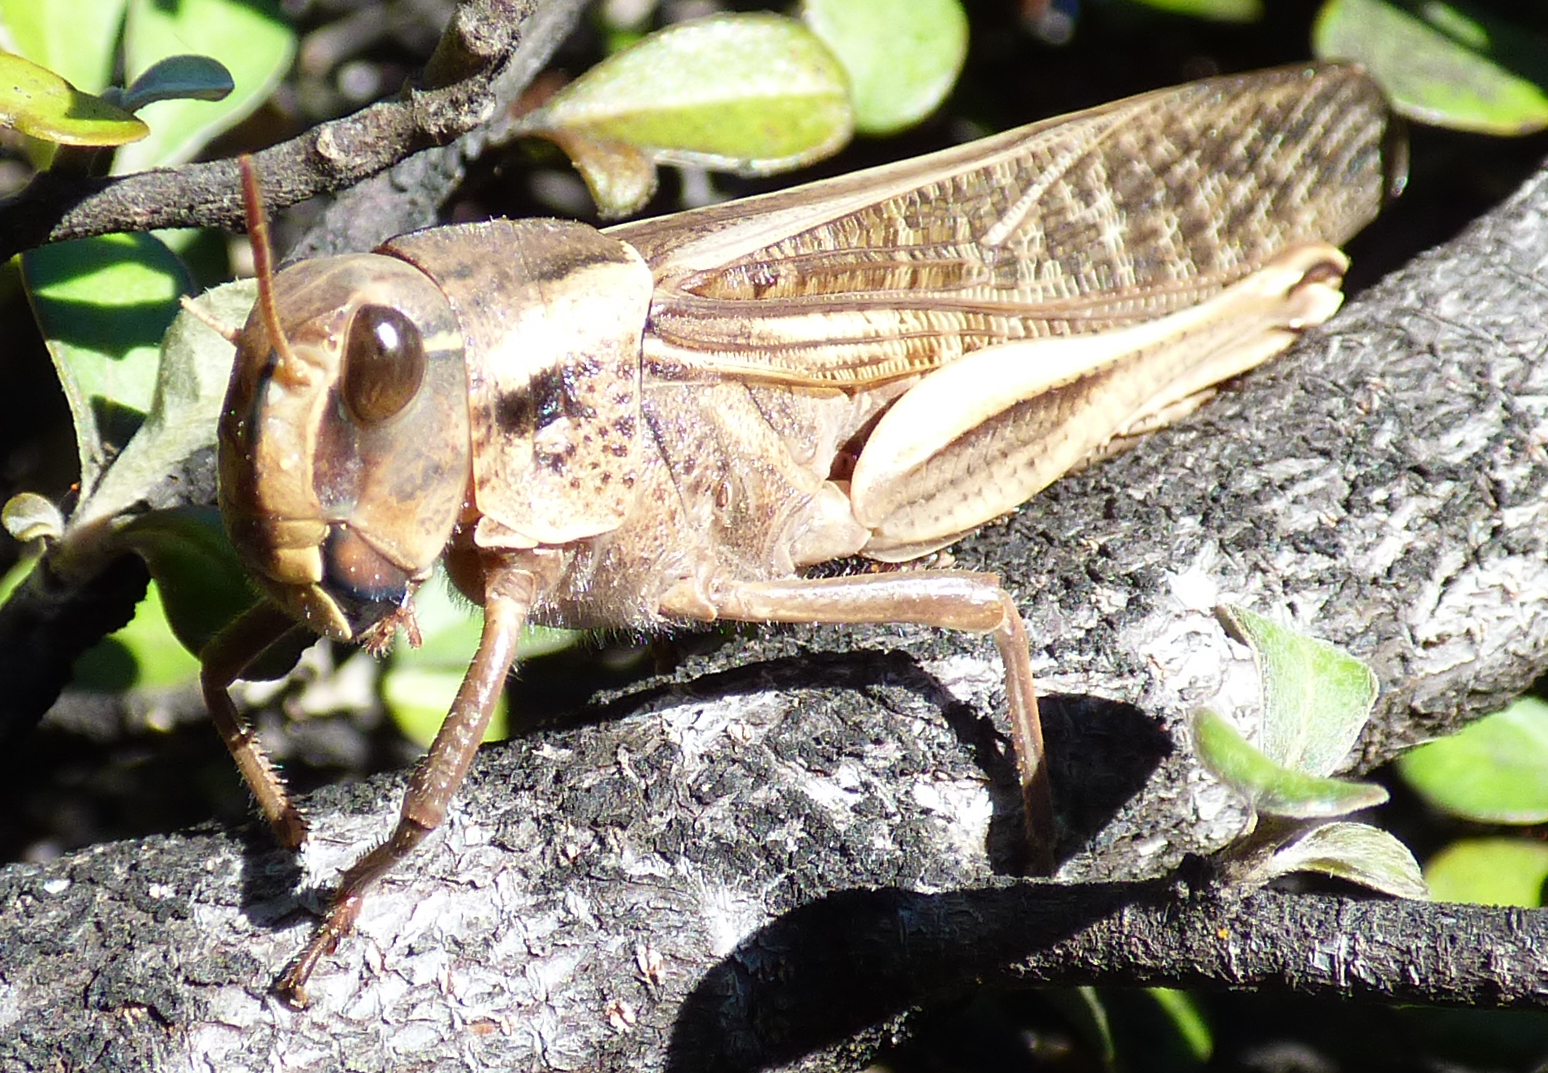 Locusta migratoria (Linnaeus, 1758), Gafanhoto-das-pragas M…